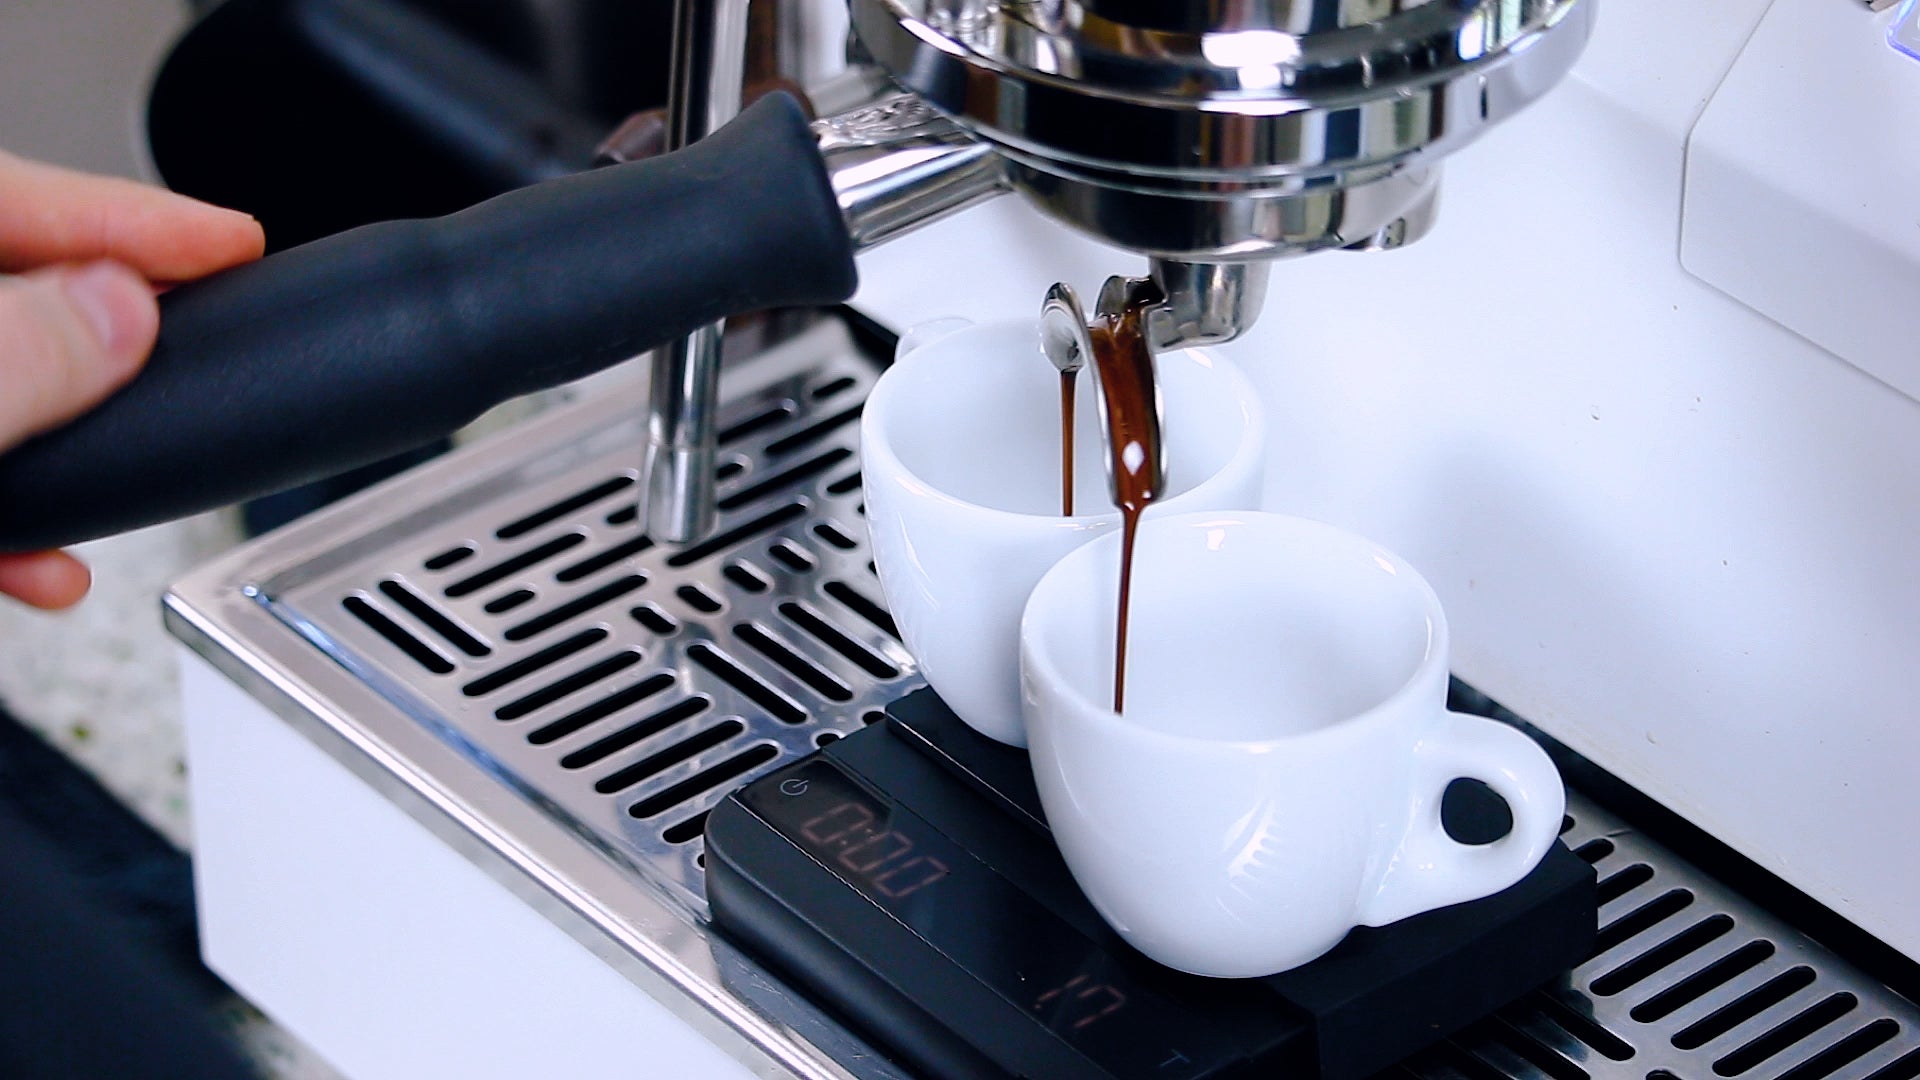 Artpresso Solo Barista Tool – Clive Coffee